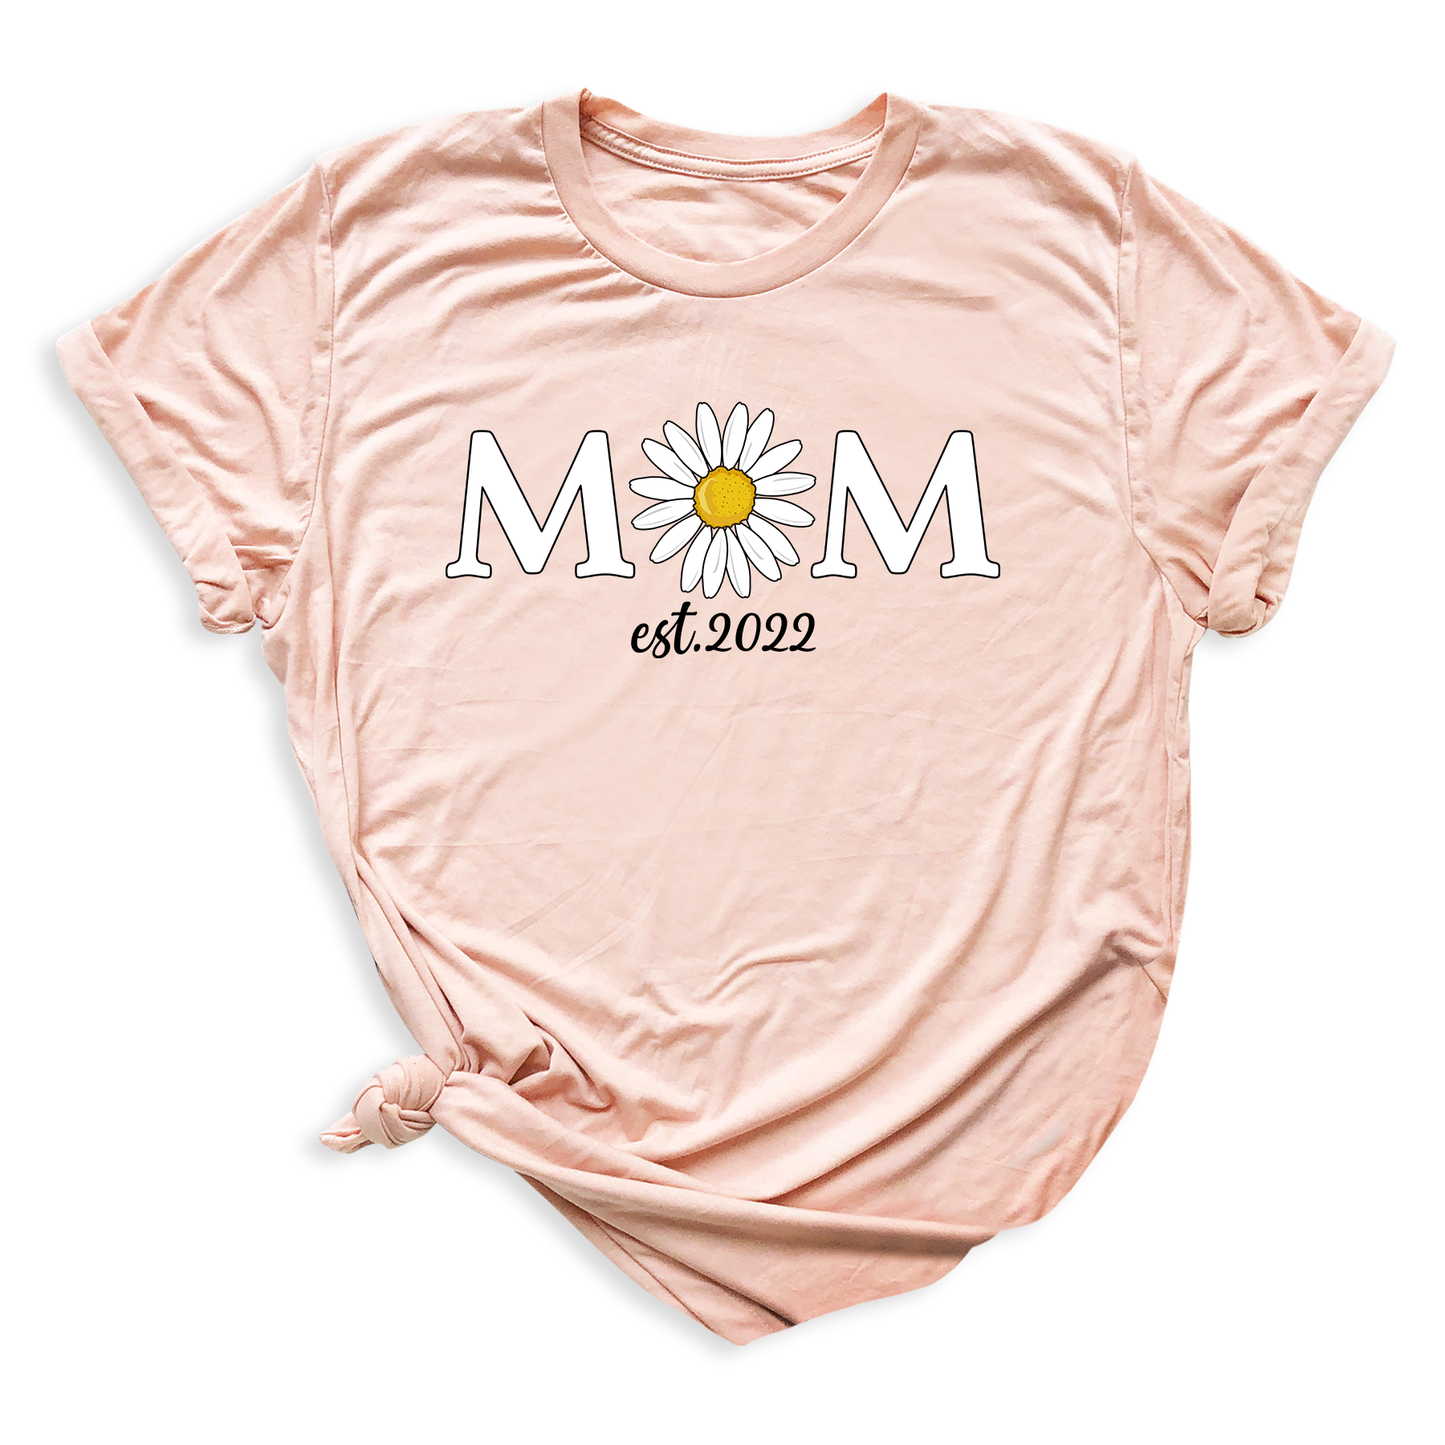 Mom Daisy Est Since T-Shirt